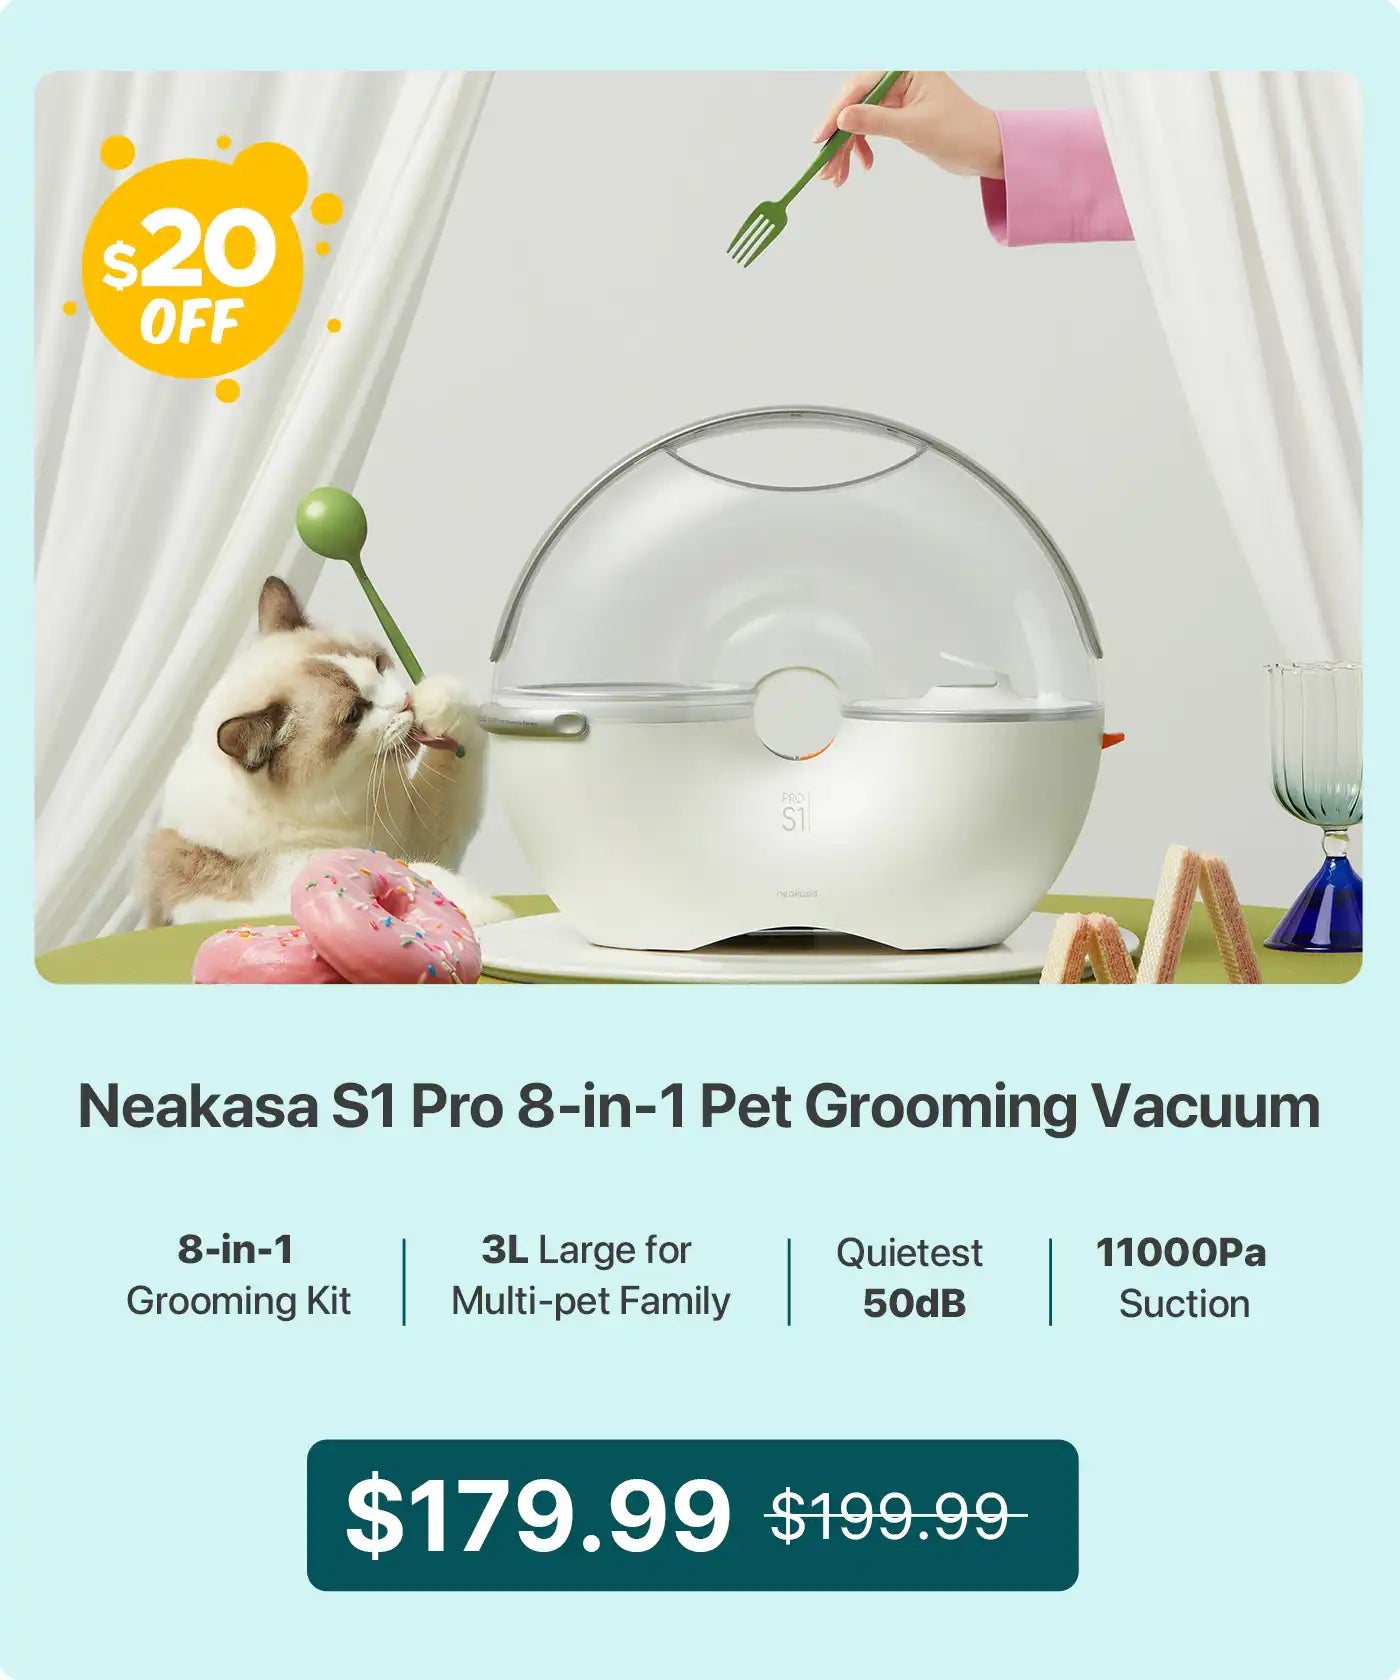 neakasa national pet day sale s1 pro